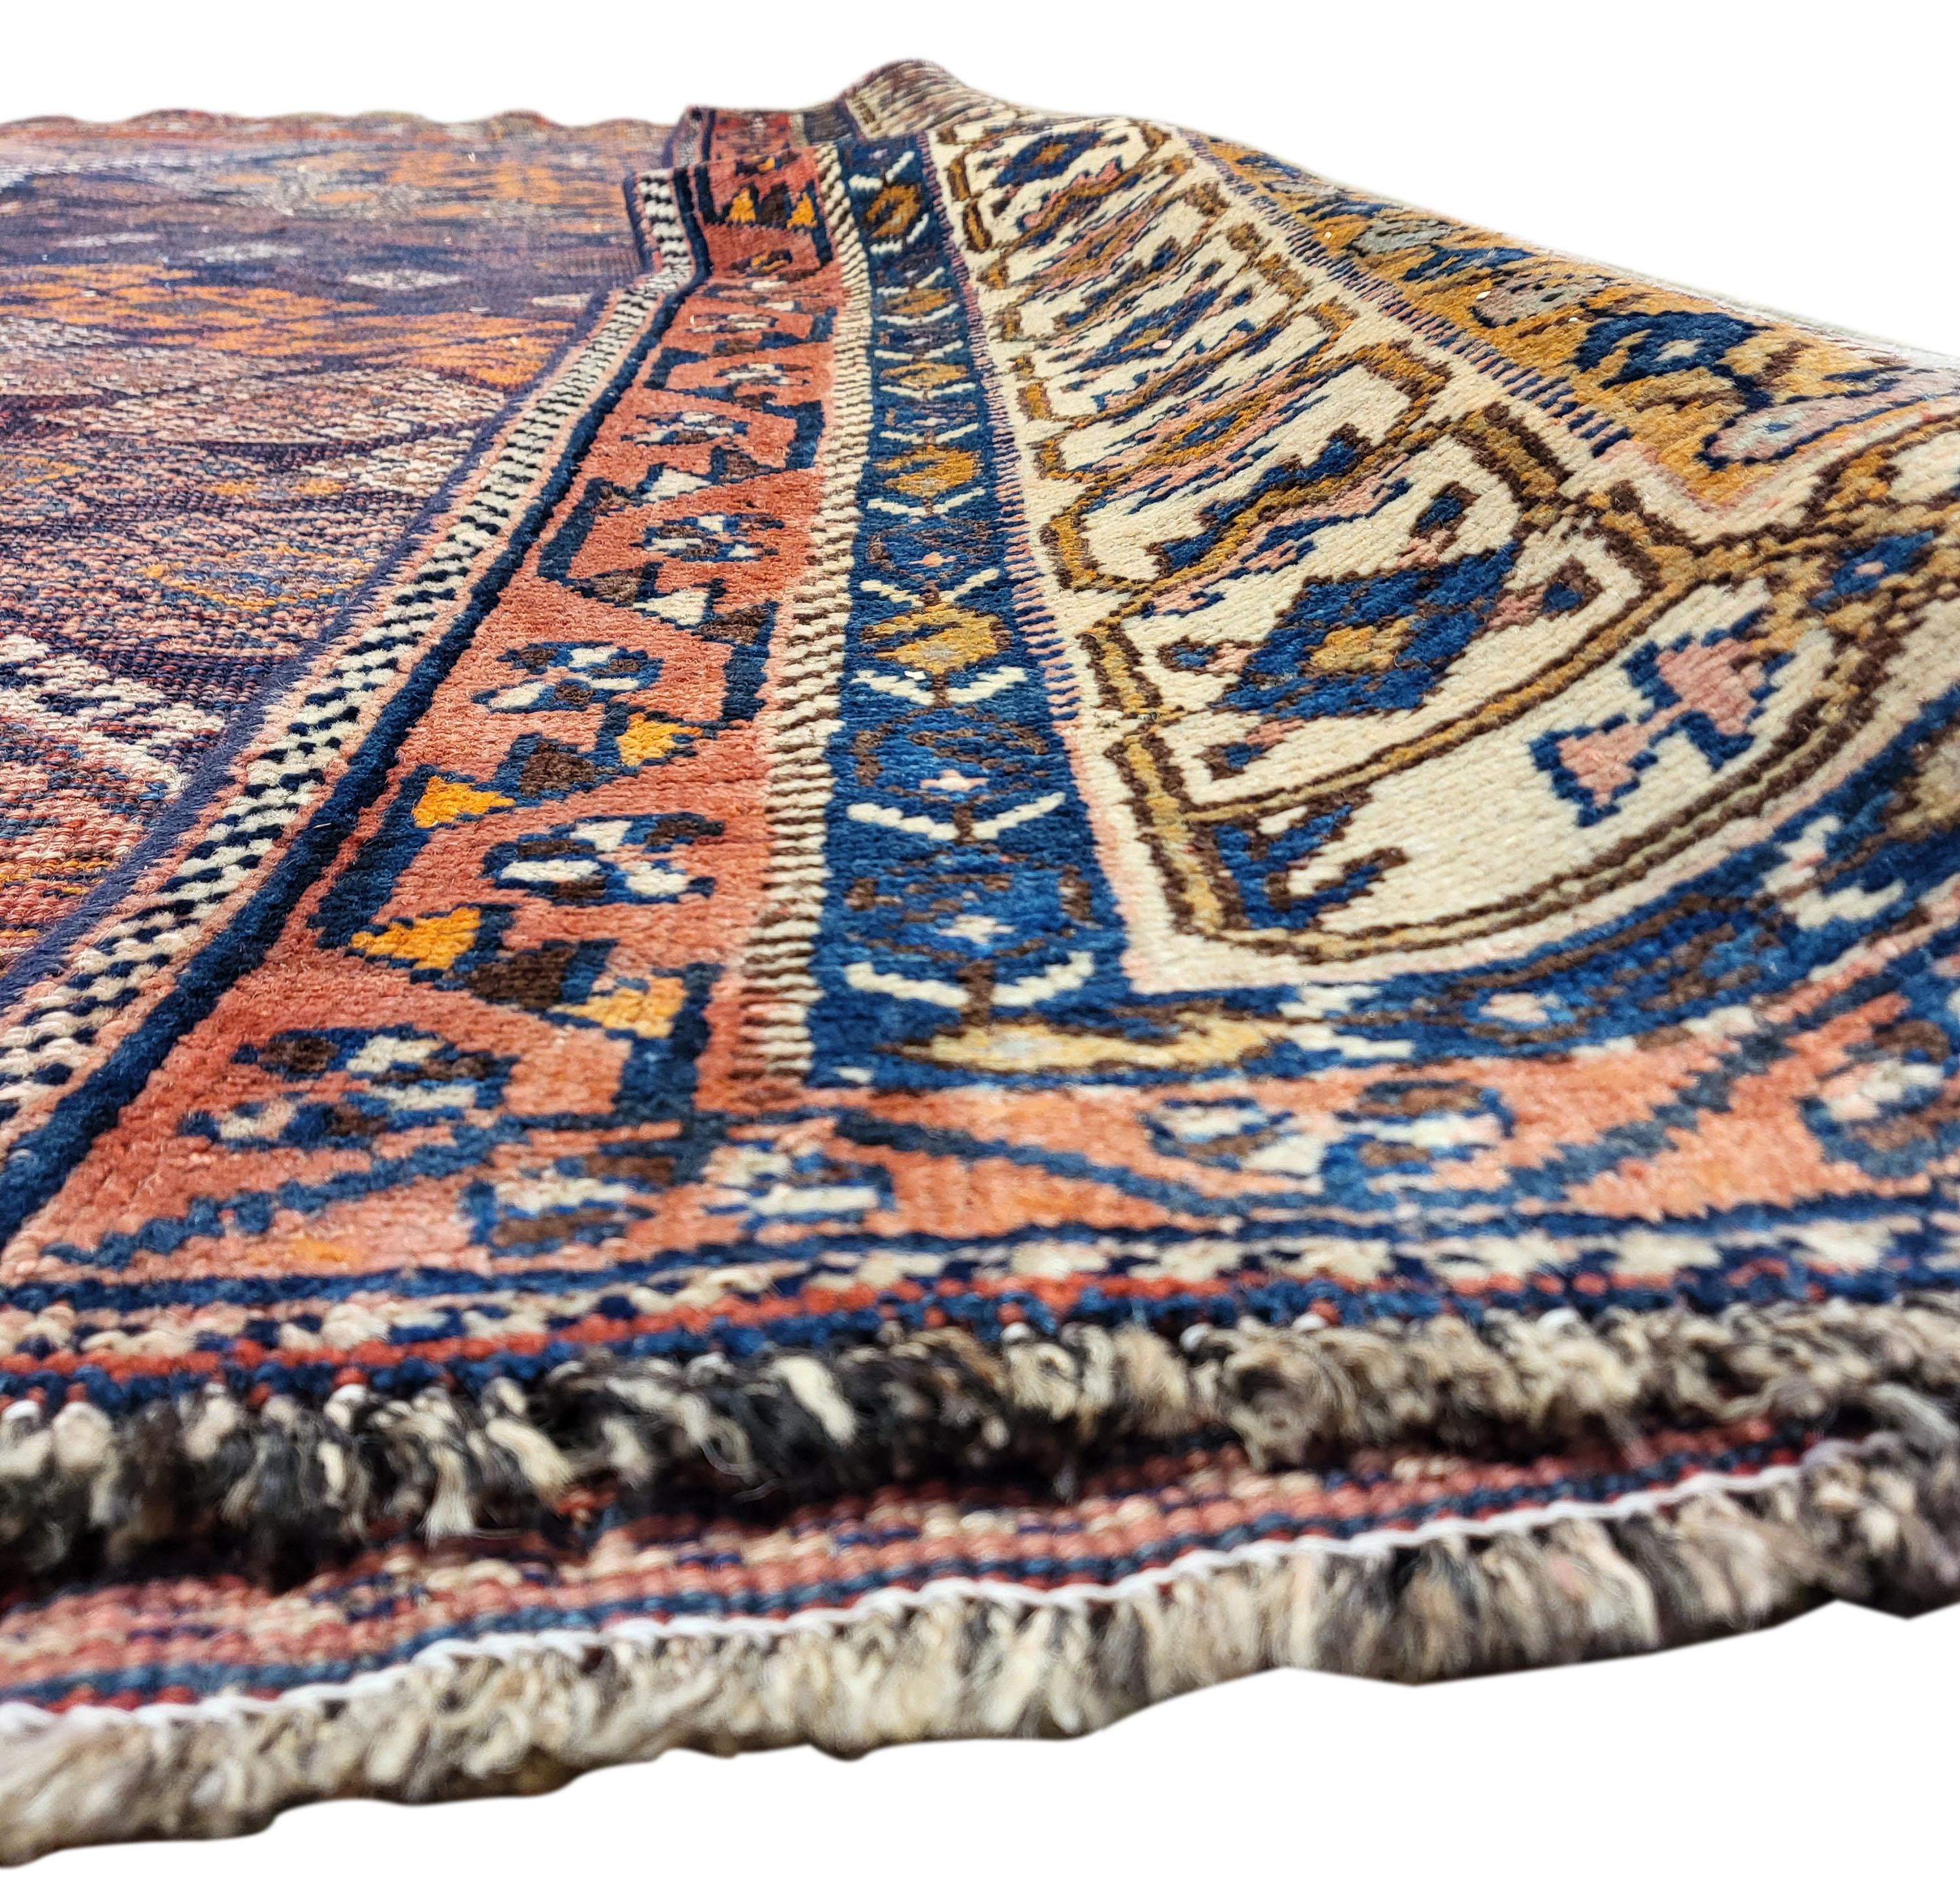 Magnifique Lori persan des années 1930. Depuis près d'un siècle, la beauté de ce tapis a résisté à l'épreuve du temps ! Les magnifiques tons rouille rehaussés par le premier plan marine de ce tapis sont incroyablement recherchés. Avec un design